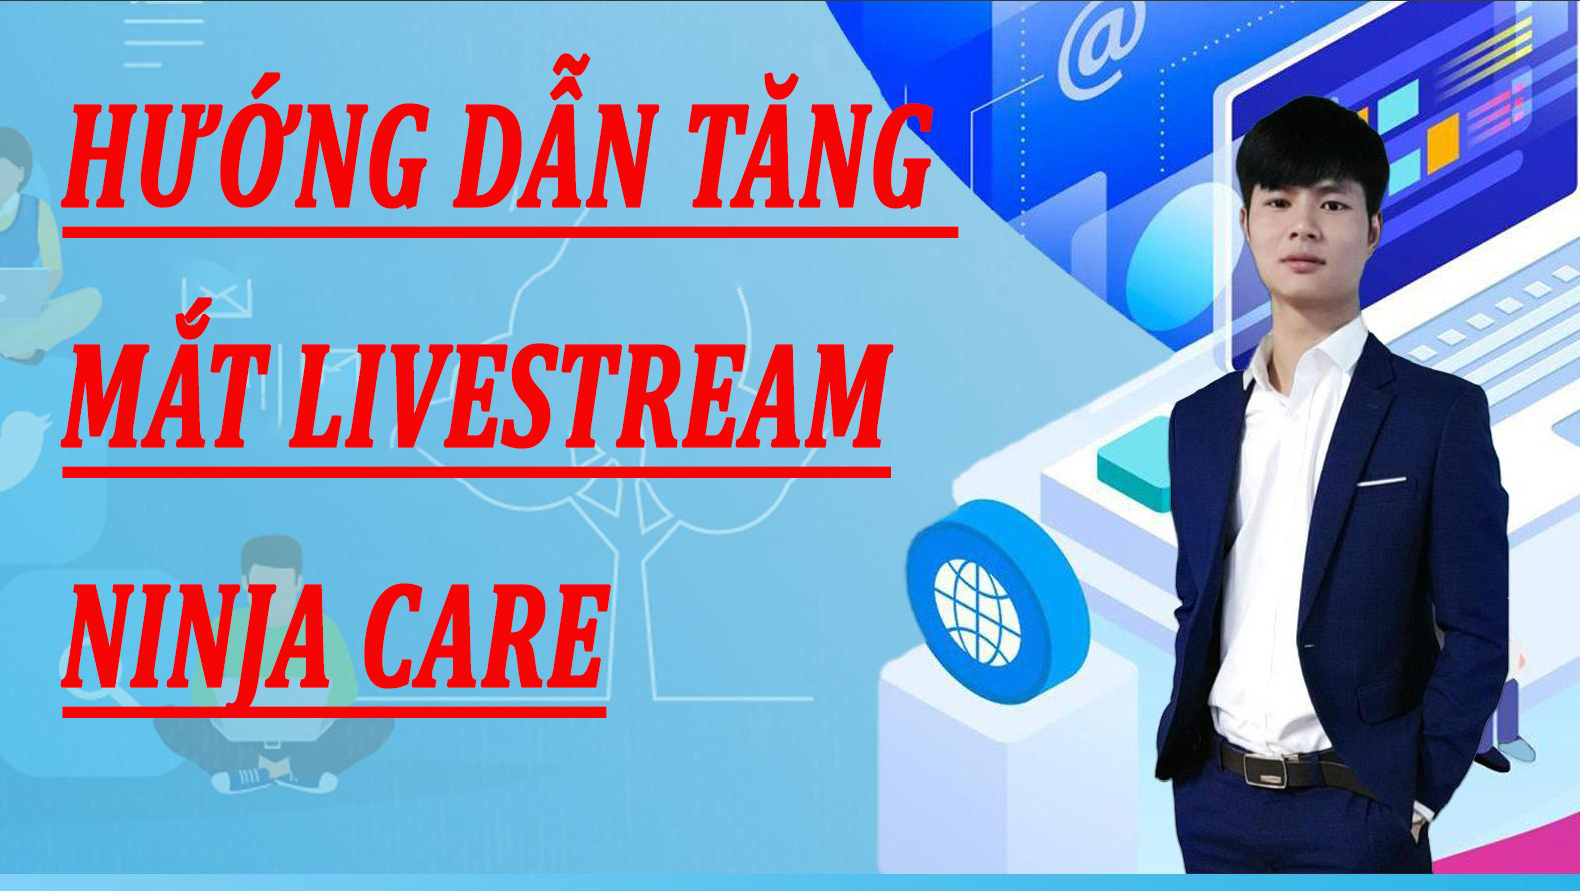 Hướng dẫn tăng mắt Livestream – Seeding Livestream Ninja Care